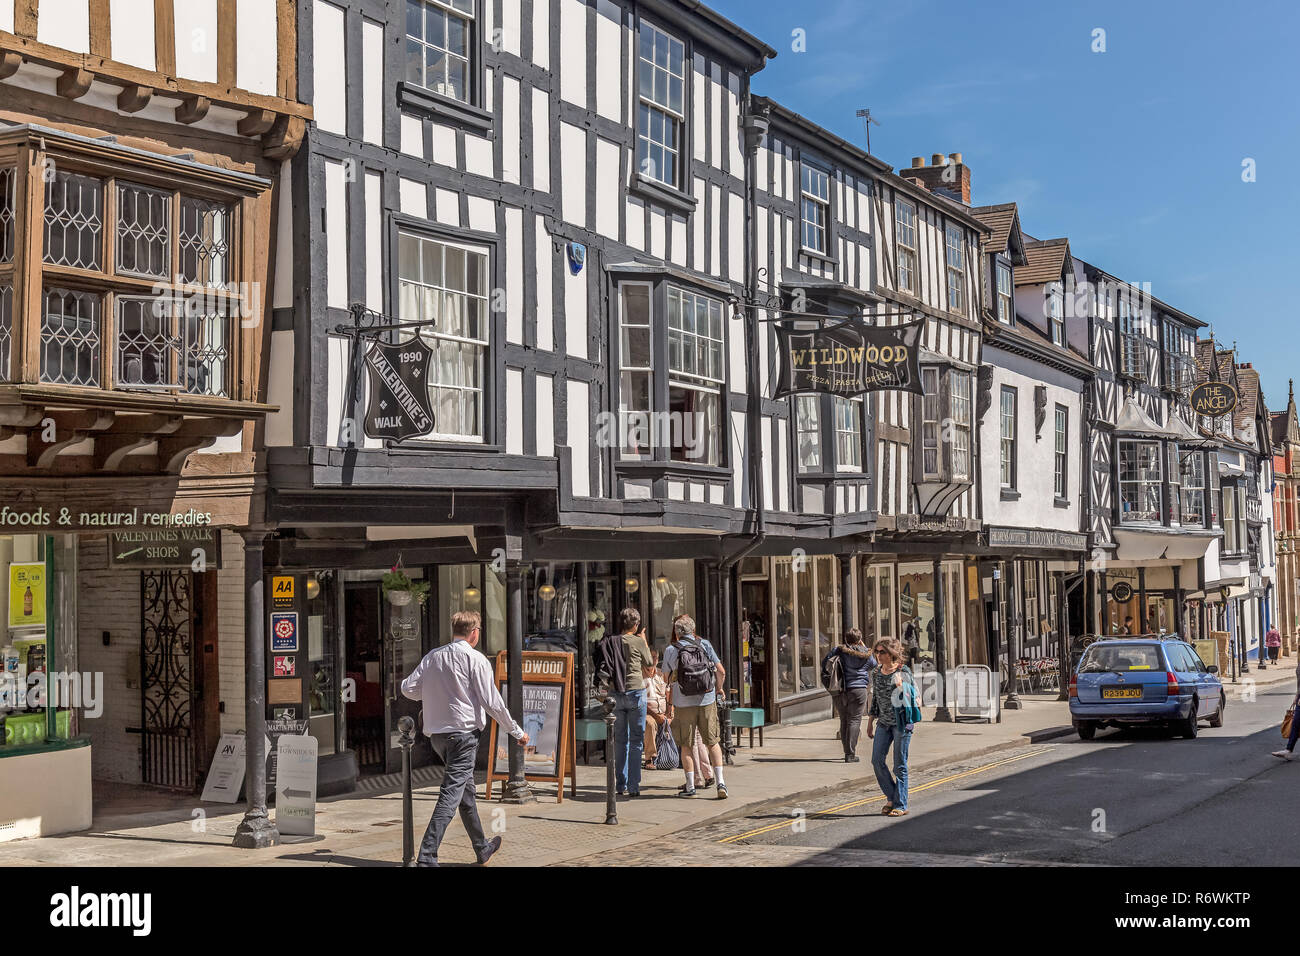 Die Stadt Ludlow in Shropshire, England. Eine mittelalterliche Stadt aus dem 11. Jahrhundert. Bevölkerung um 11.000. Stockfoto